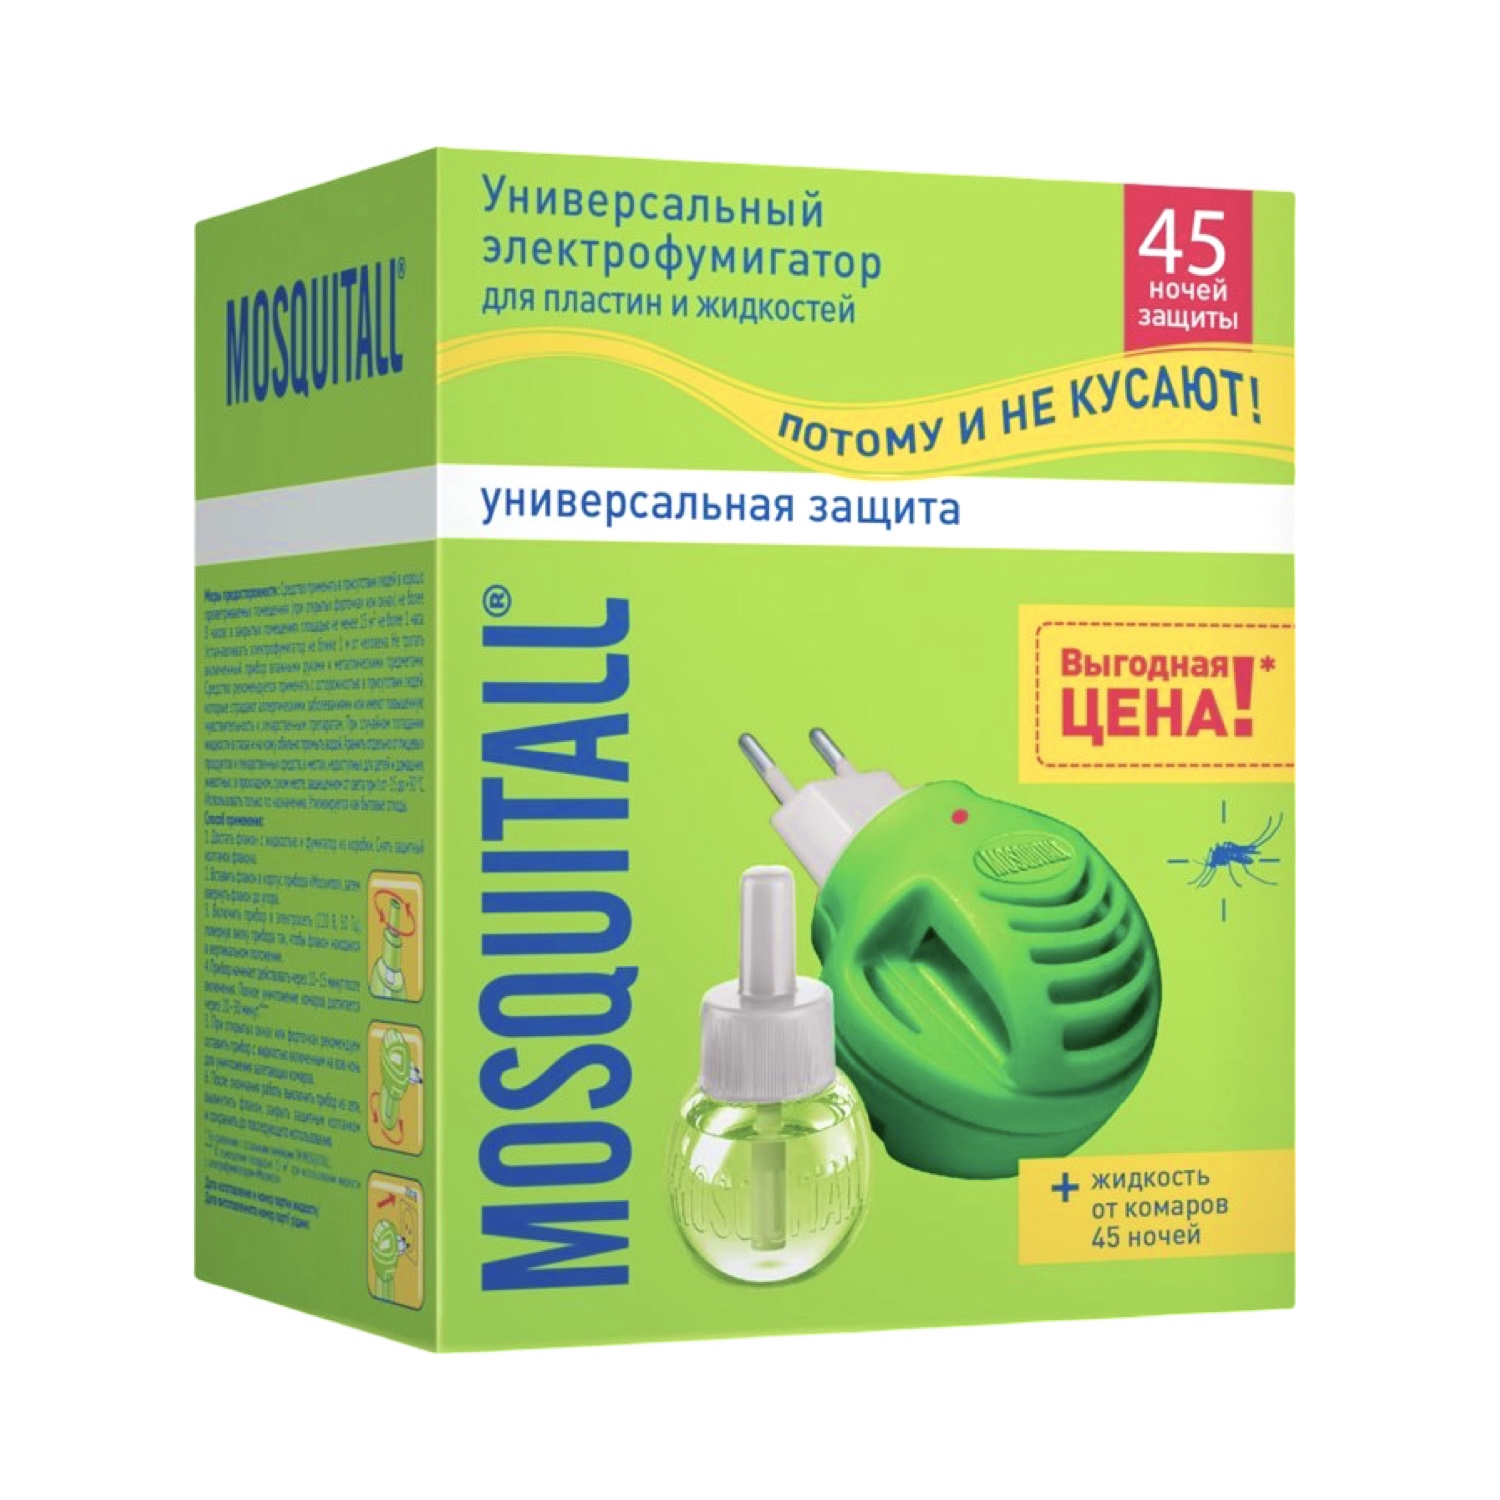 MOSQUITALL Комплект Прибор с диодом+Жидкость 45 ночей "Универсальная Защита" от комаров